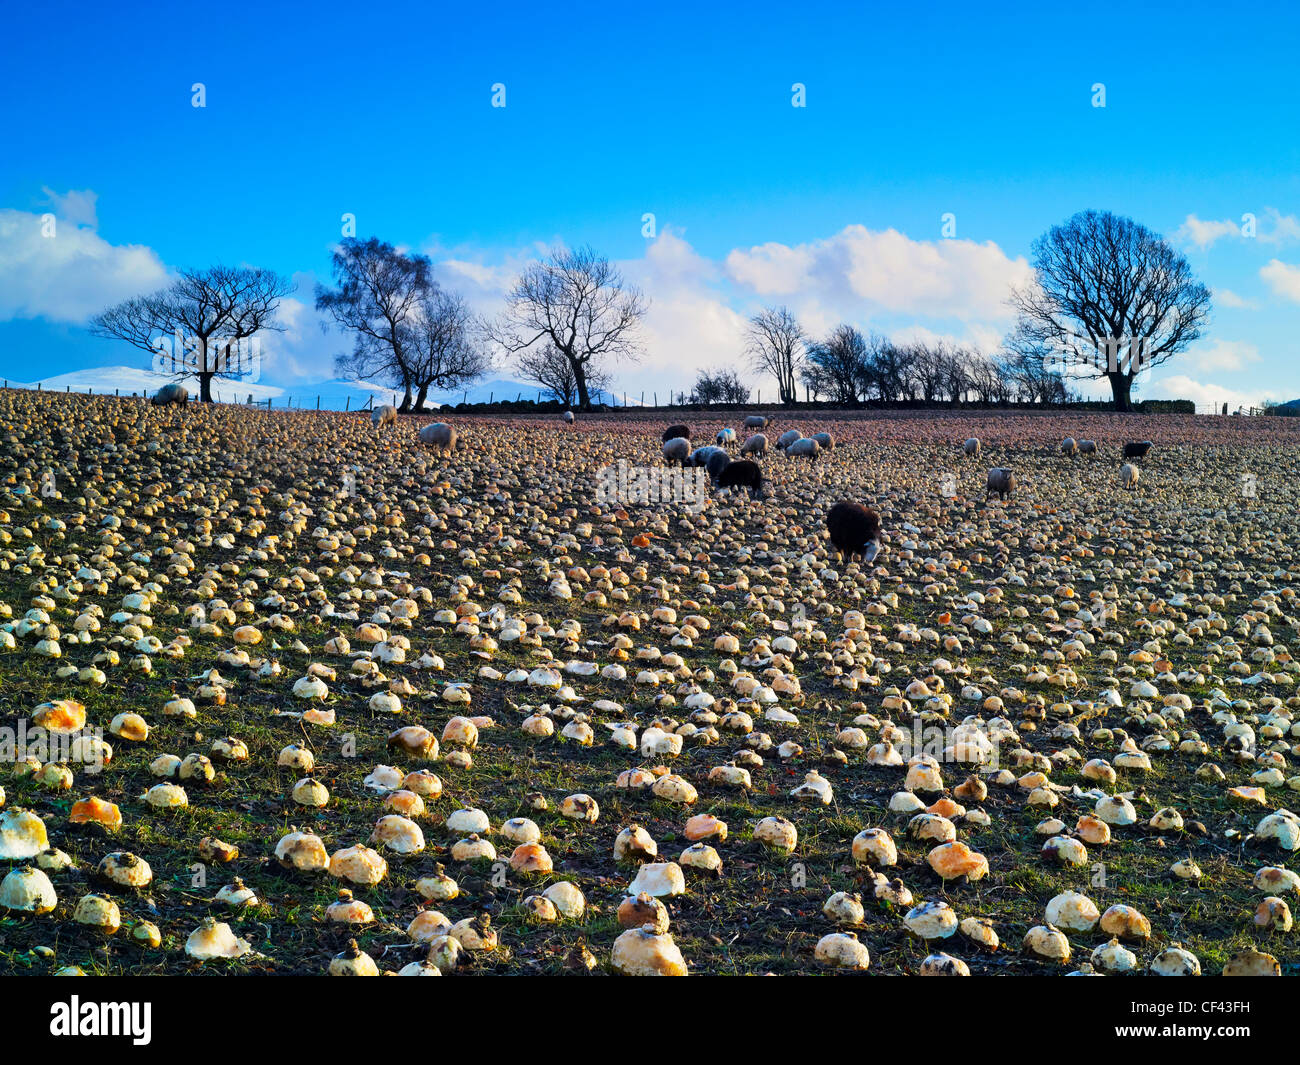 Schafbeweidung in einem Feld von Rüben im Lake District. Stockfoto